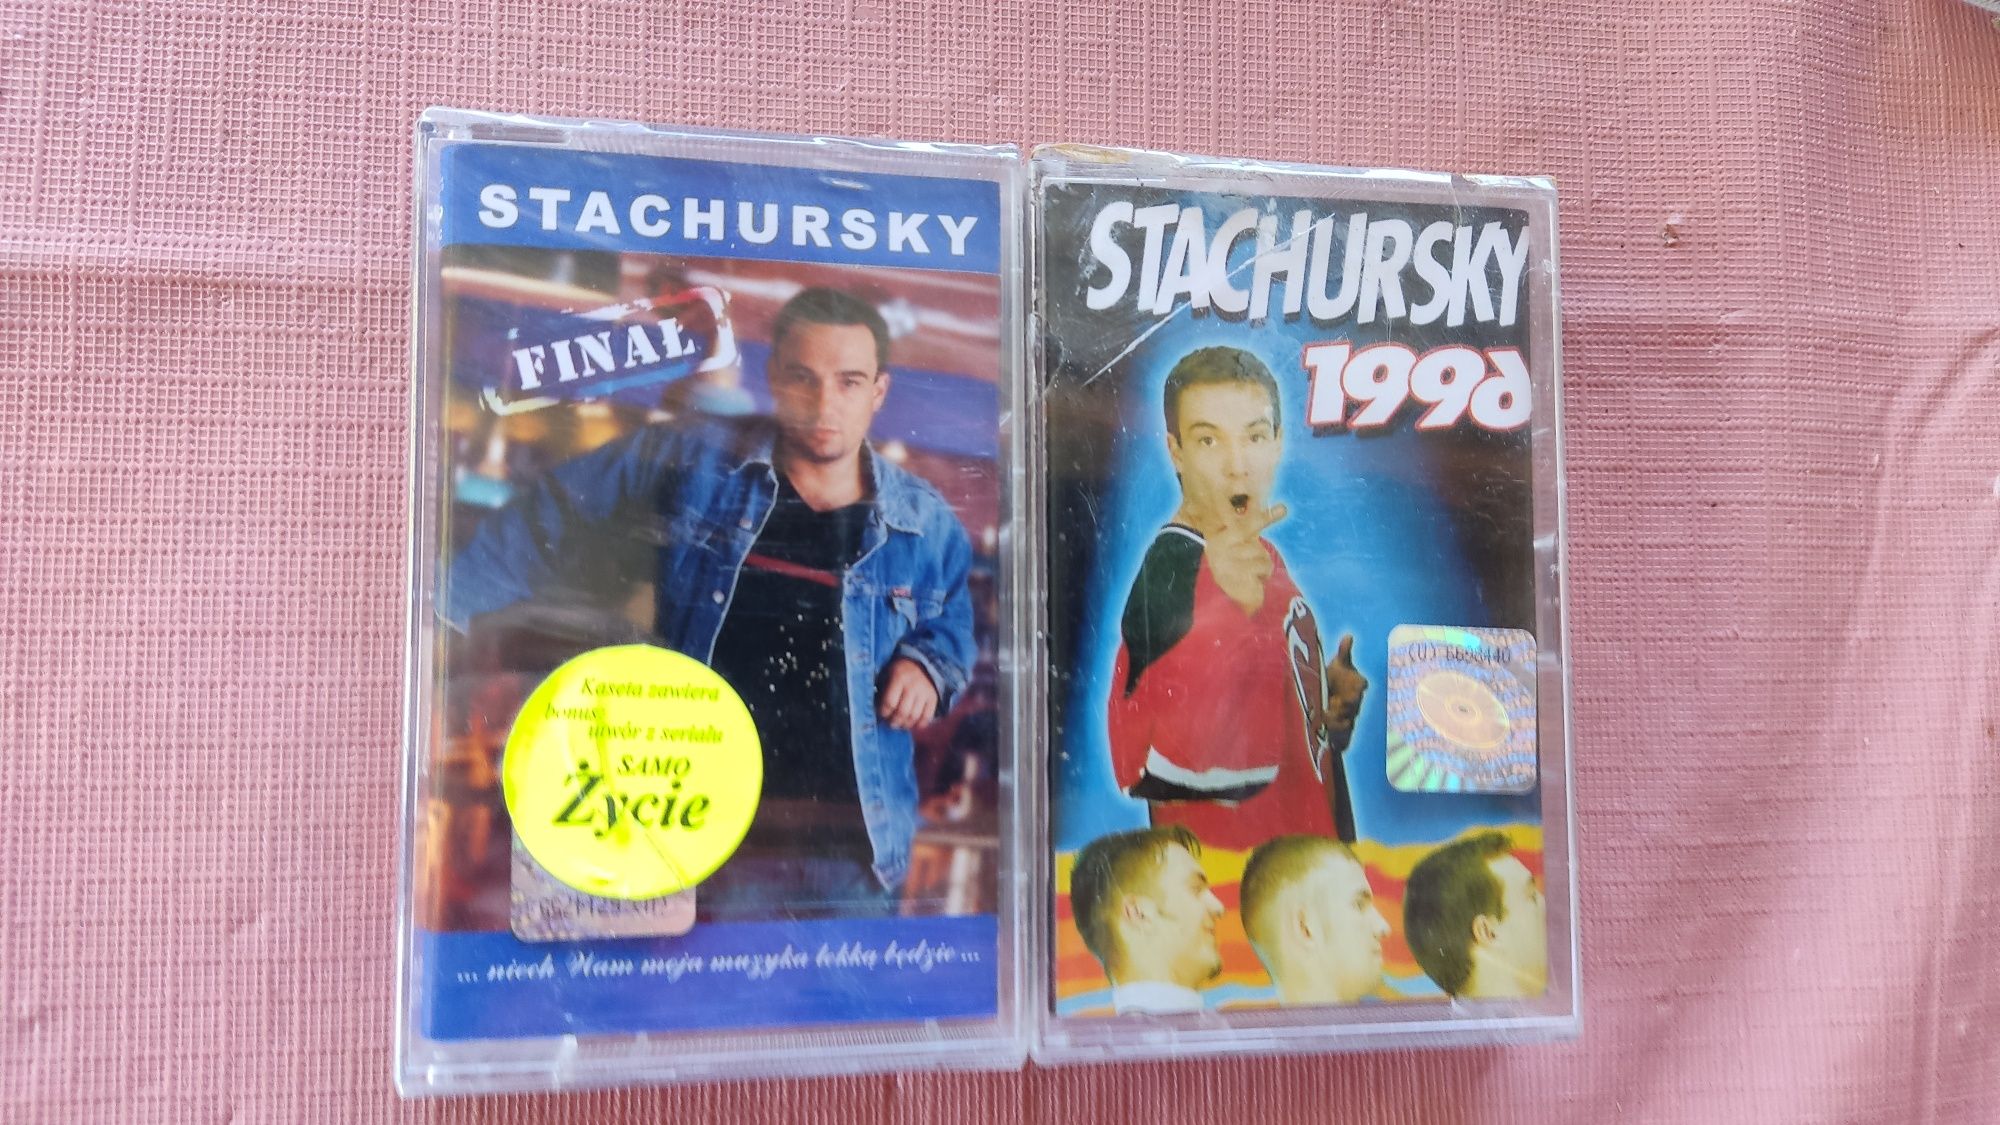 Snakes Music Stachursky Finał 1996 kaseta nowa w folii Polski Dance